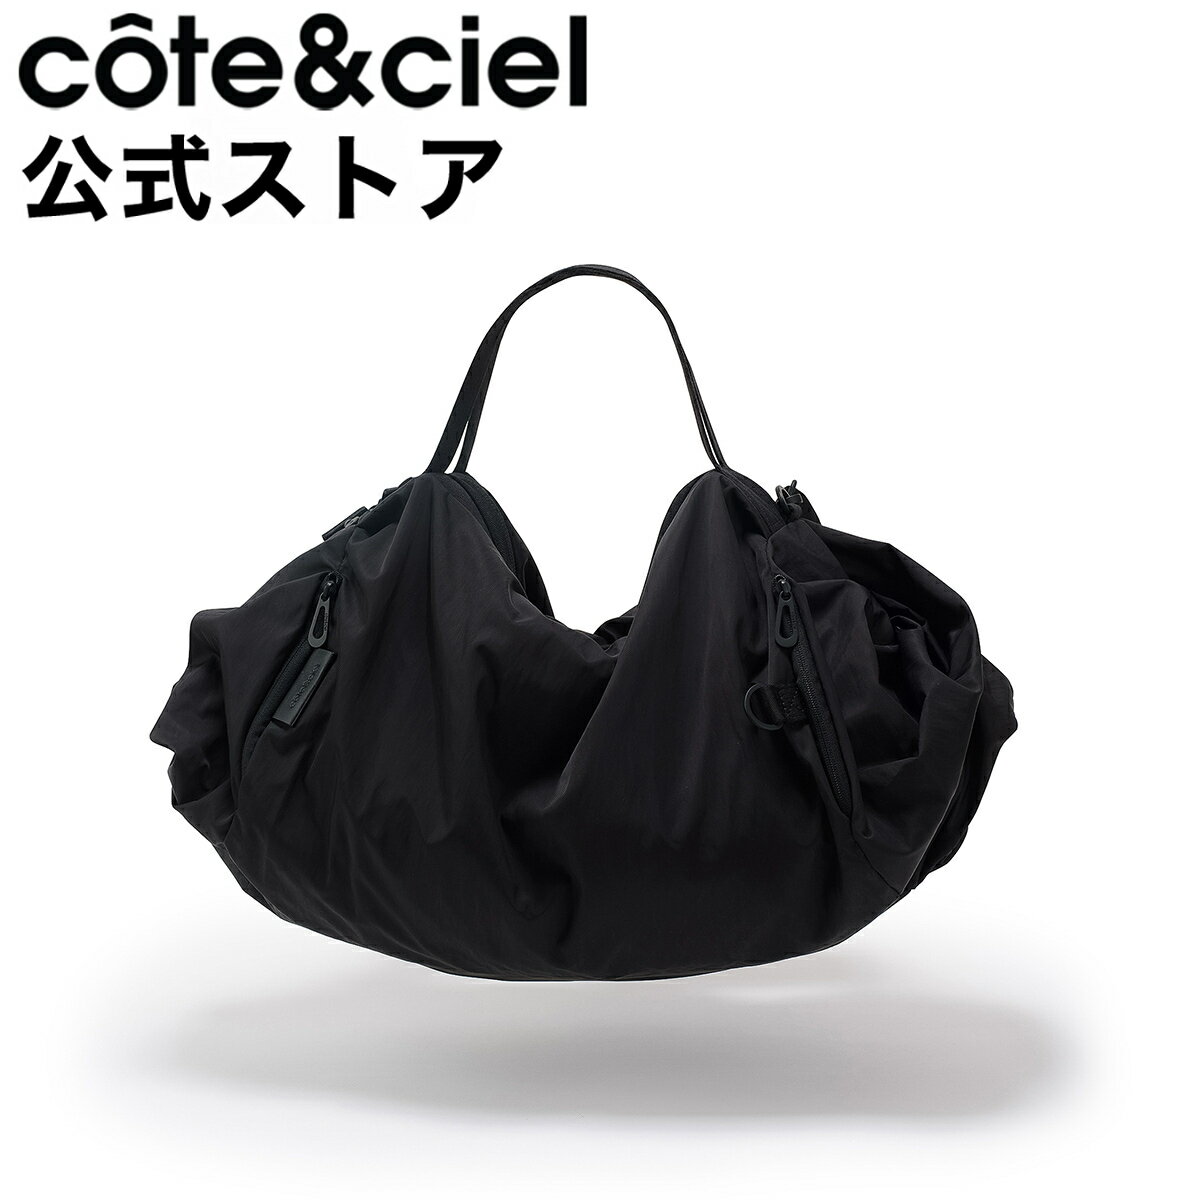 【公式】 ステッカープレゼント | cote&c...の商品画像